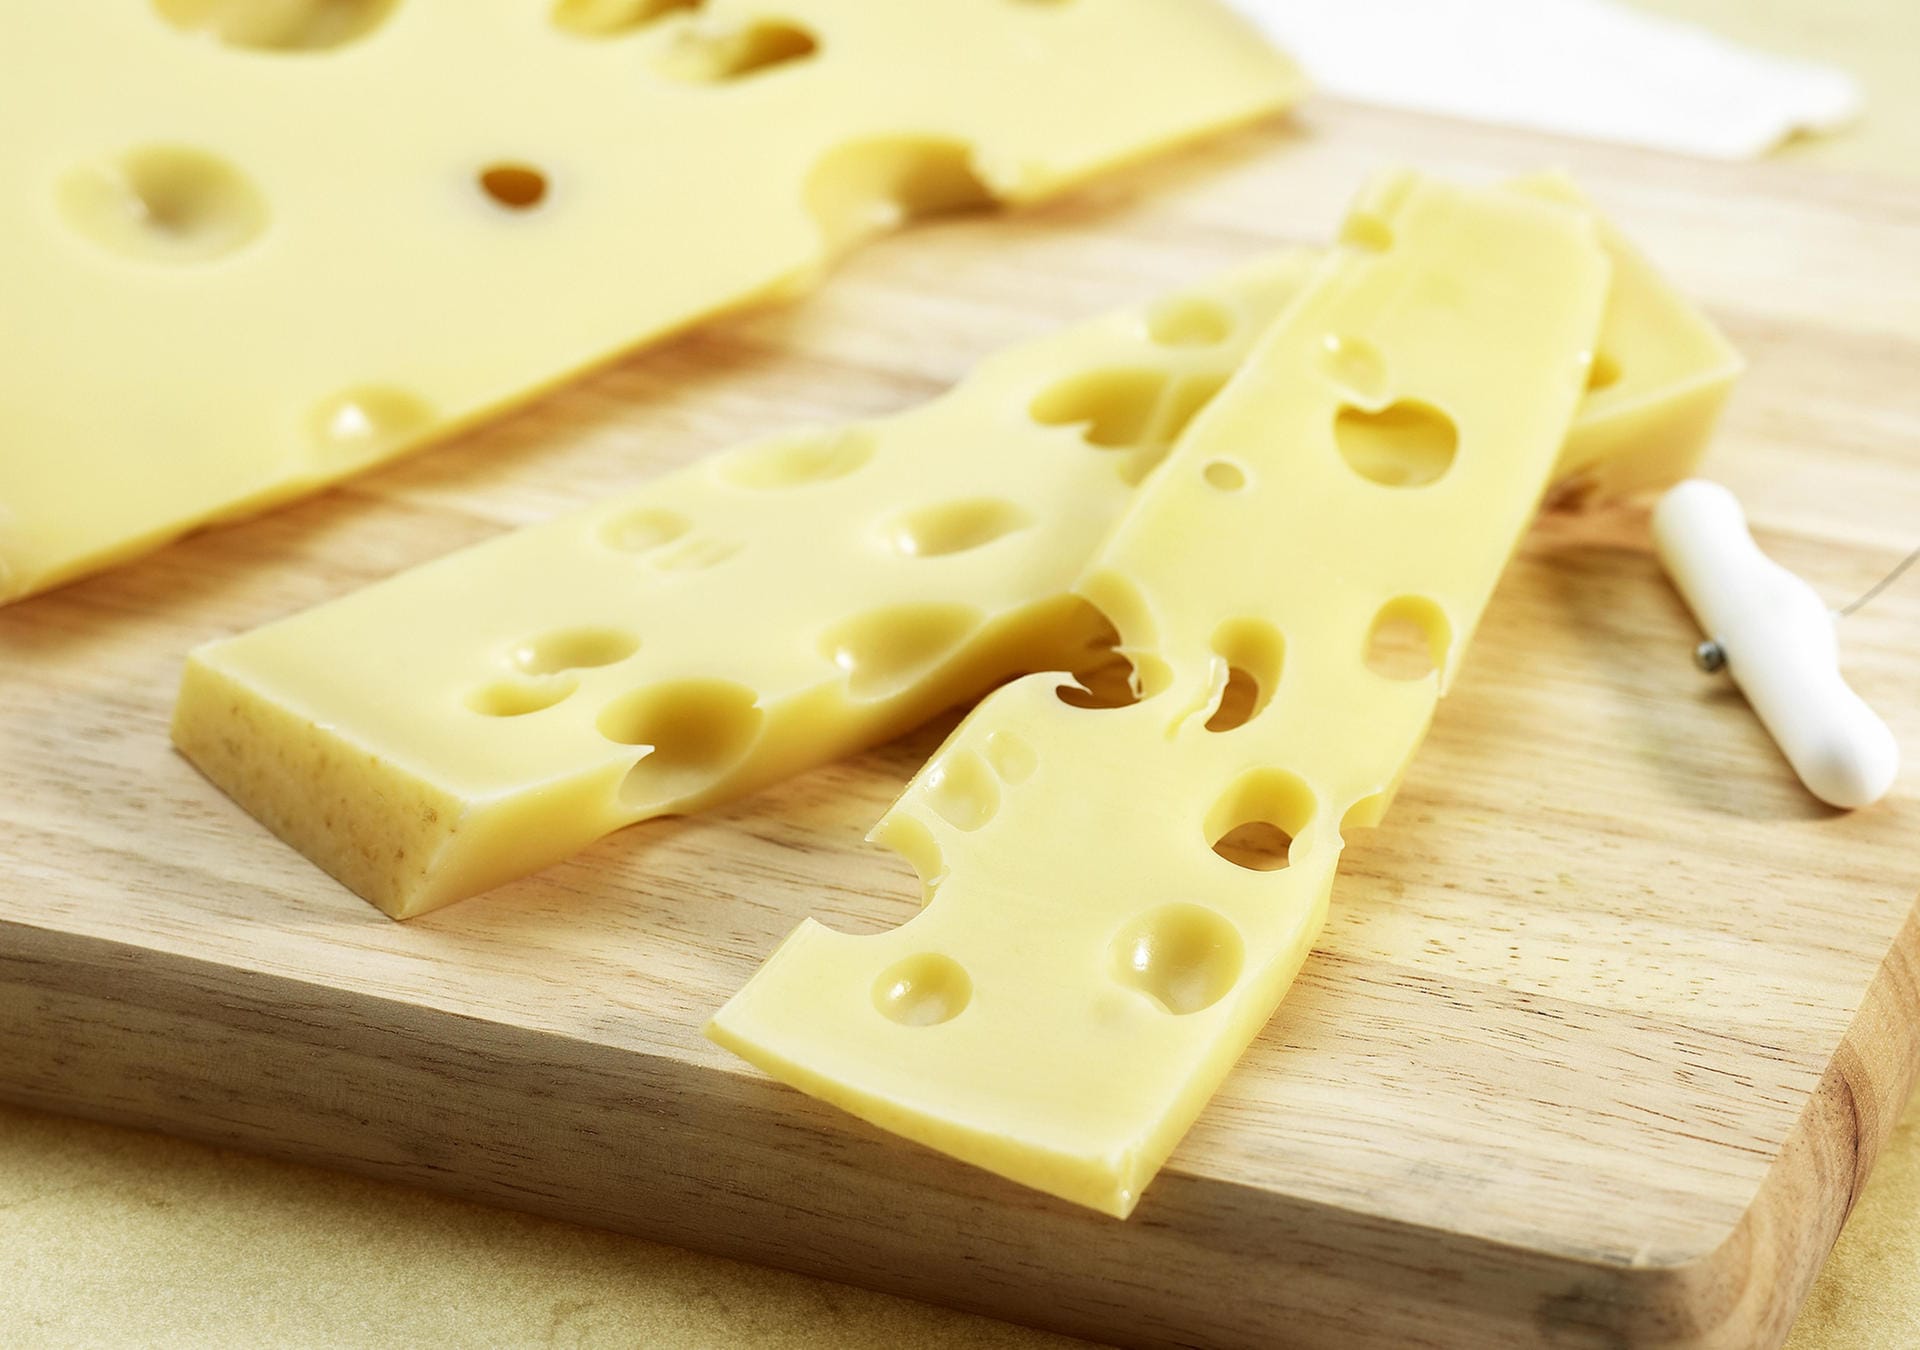 Emmentaler kommt ursprünglich aus der Schweiz und fällt durch seine vielen Löcher auf. Der Hartkäse wird umgangssprachlich auch als Schweizer Käse bezeichnet. Sein Aroma ist würzig bis nussig.